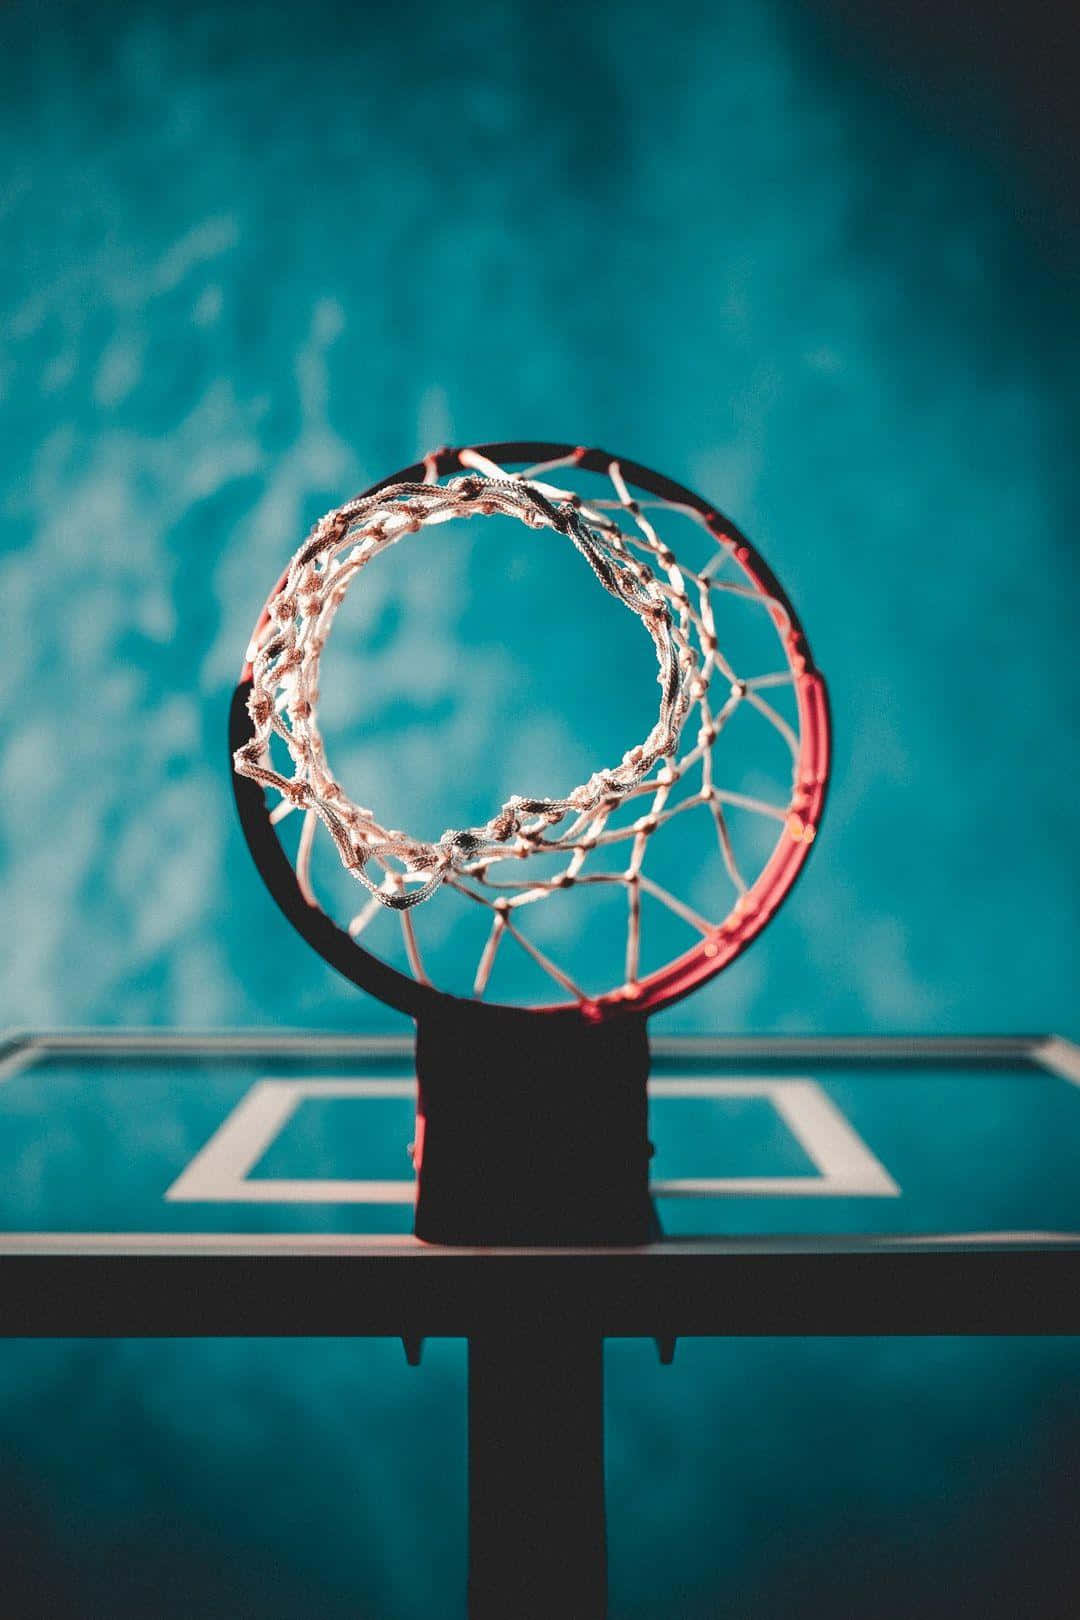 Basketball Hoop Artistic View.jpg Background